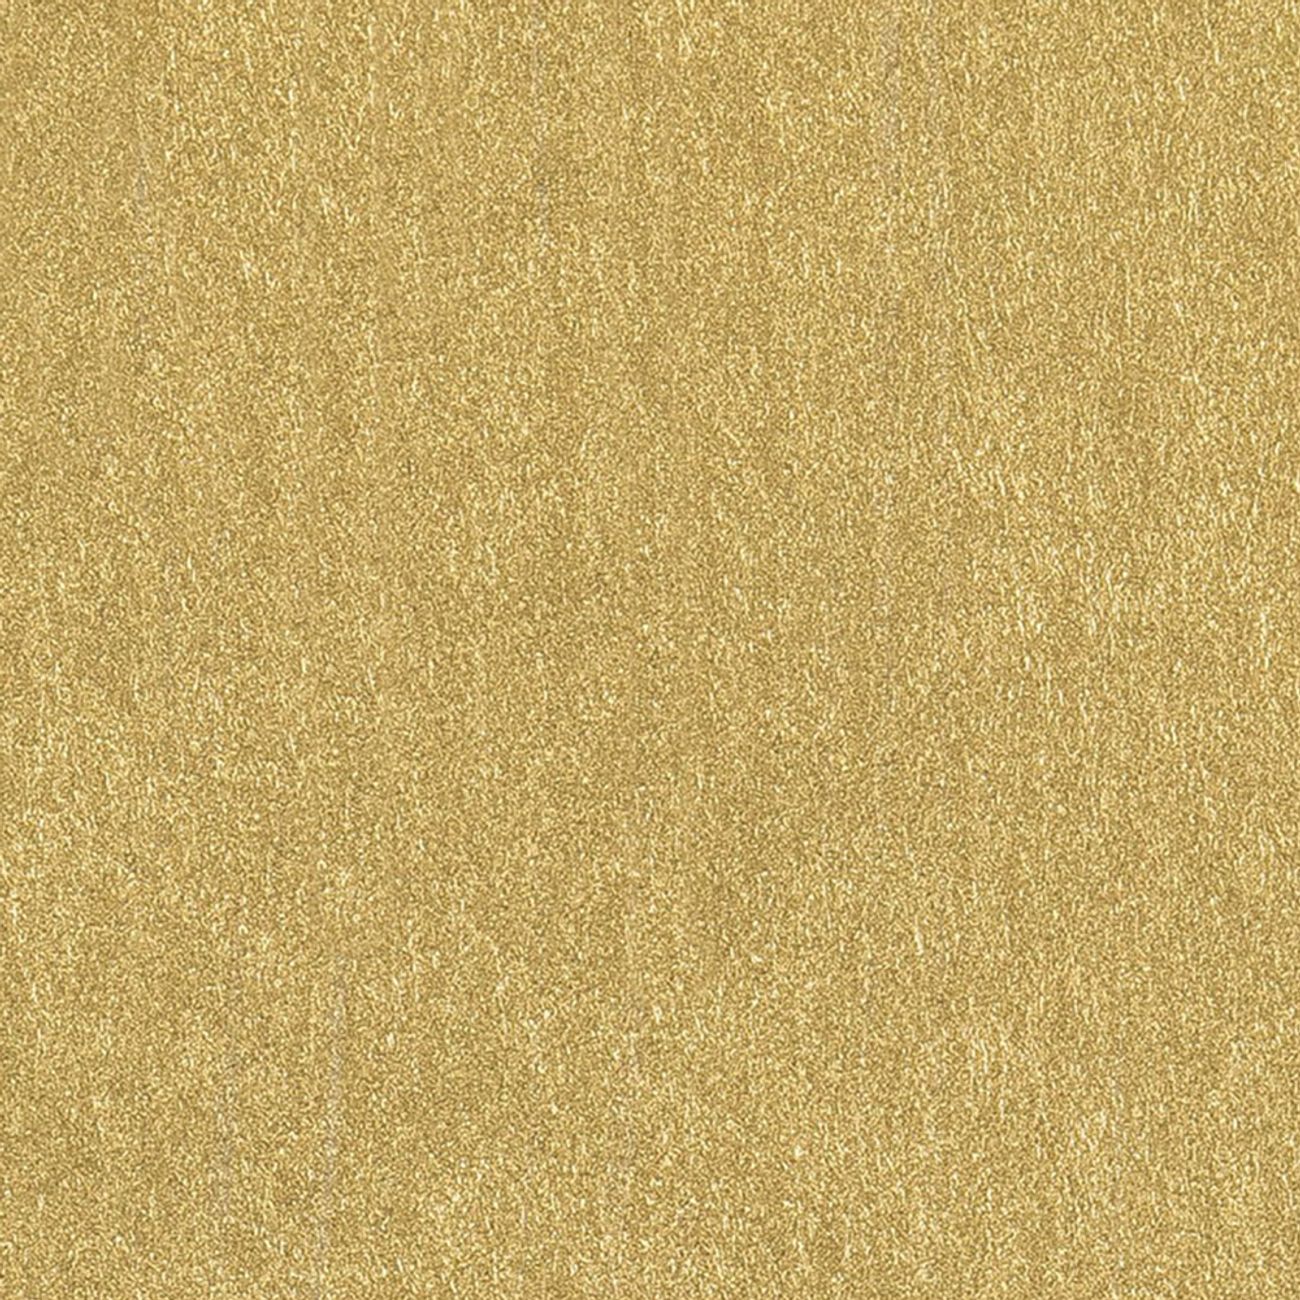 dekorationstusch-guld-45247-3